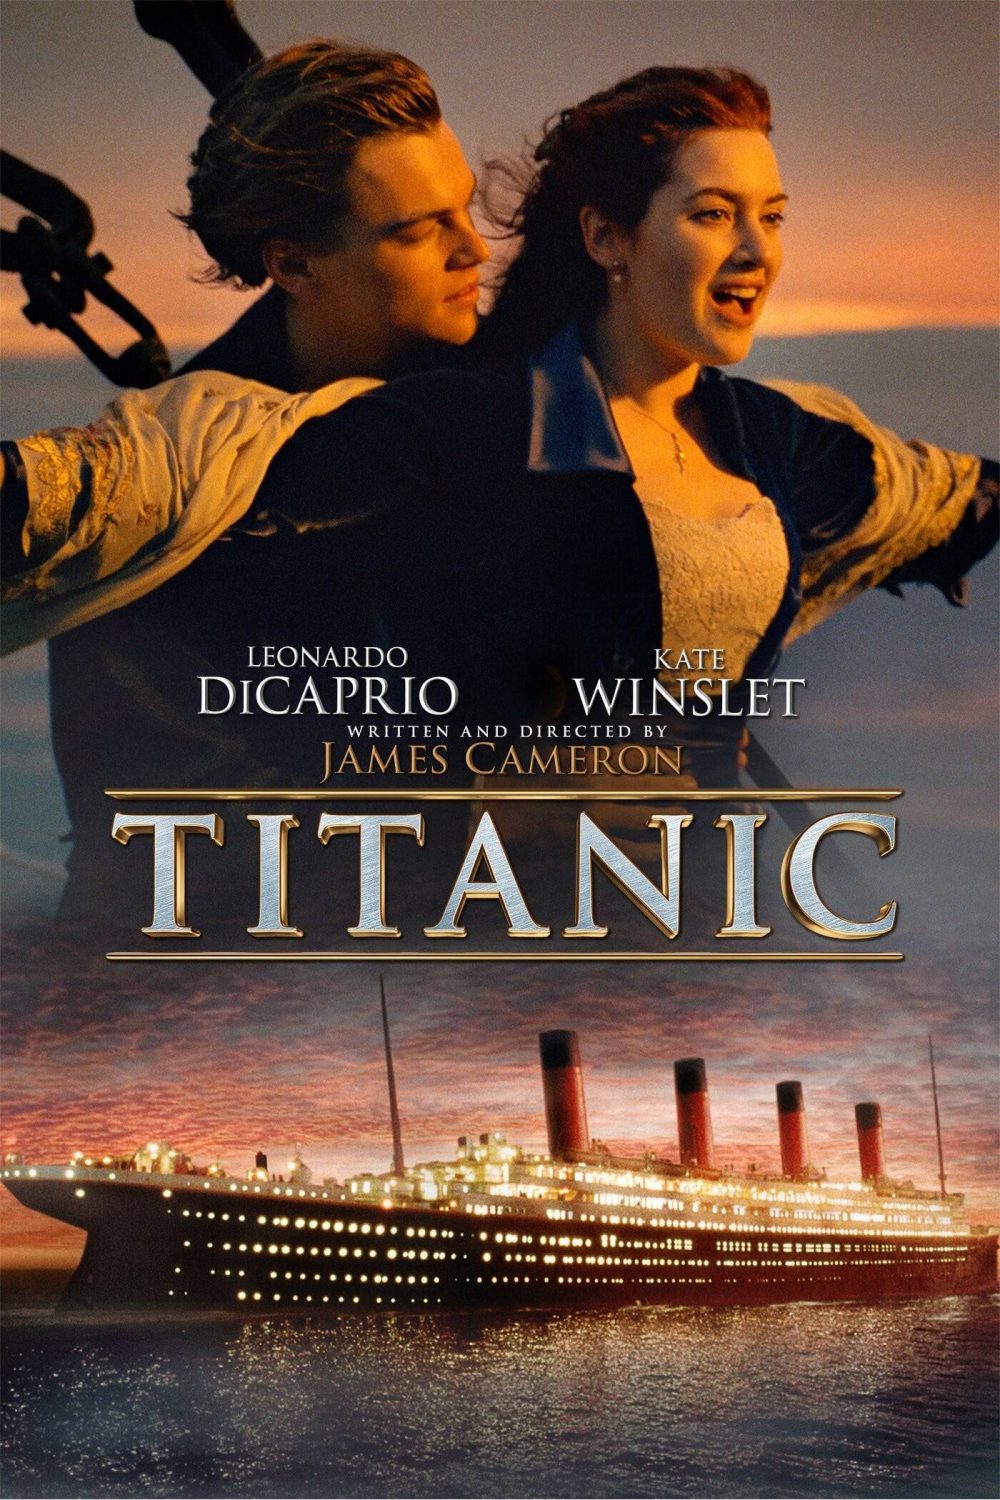 فیلم تایتانیک 1997 Titanic